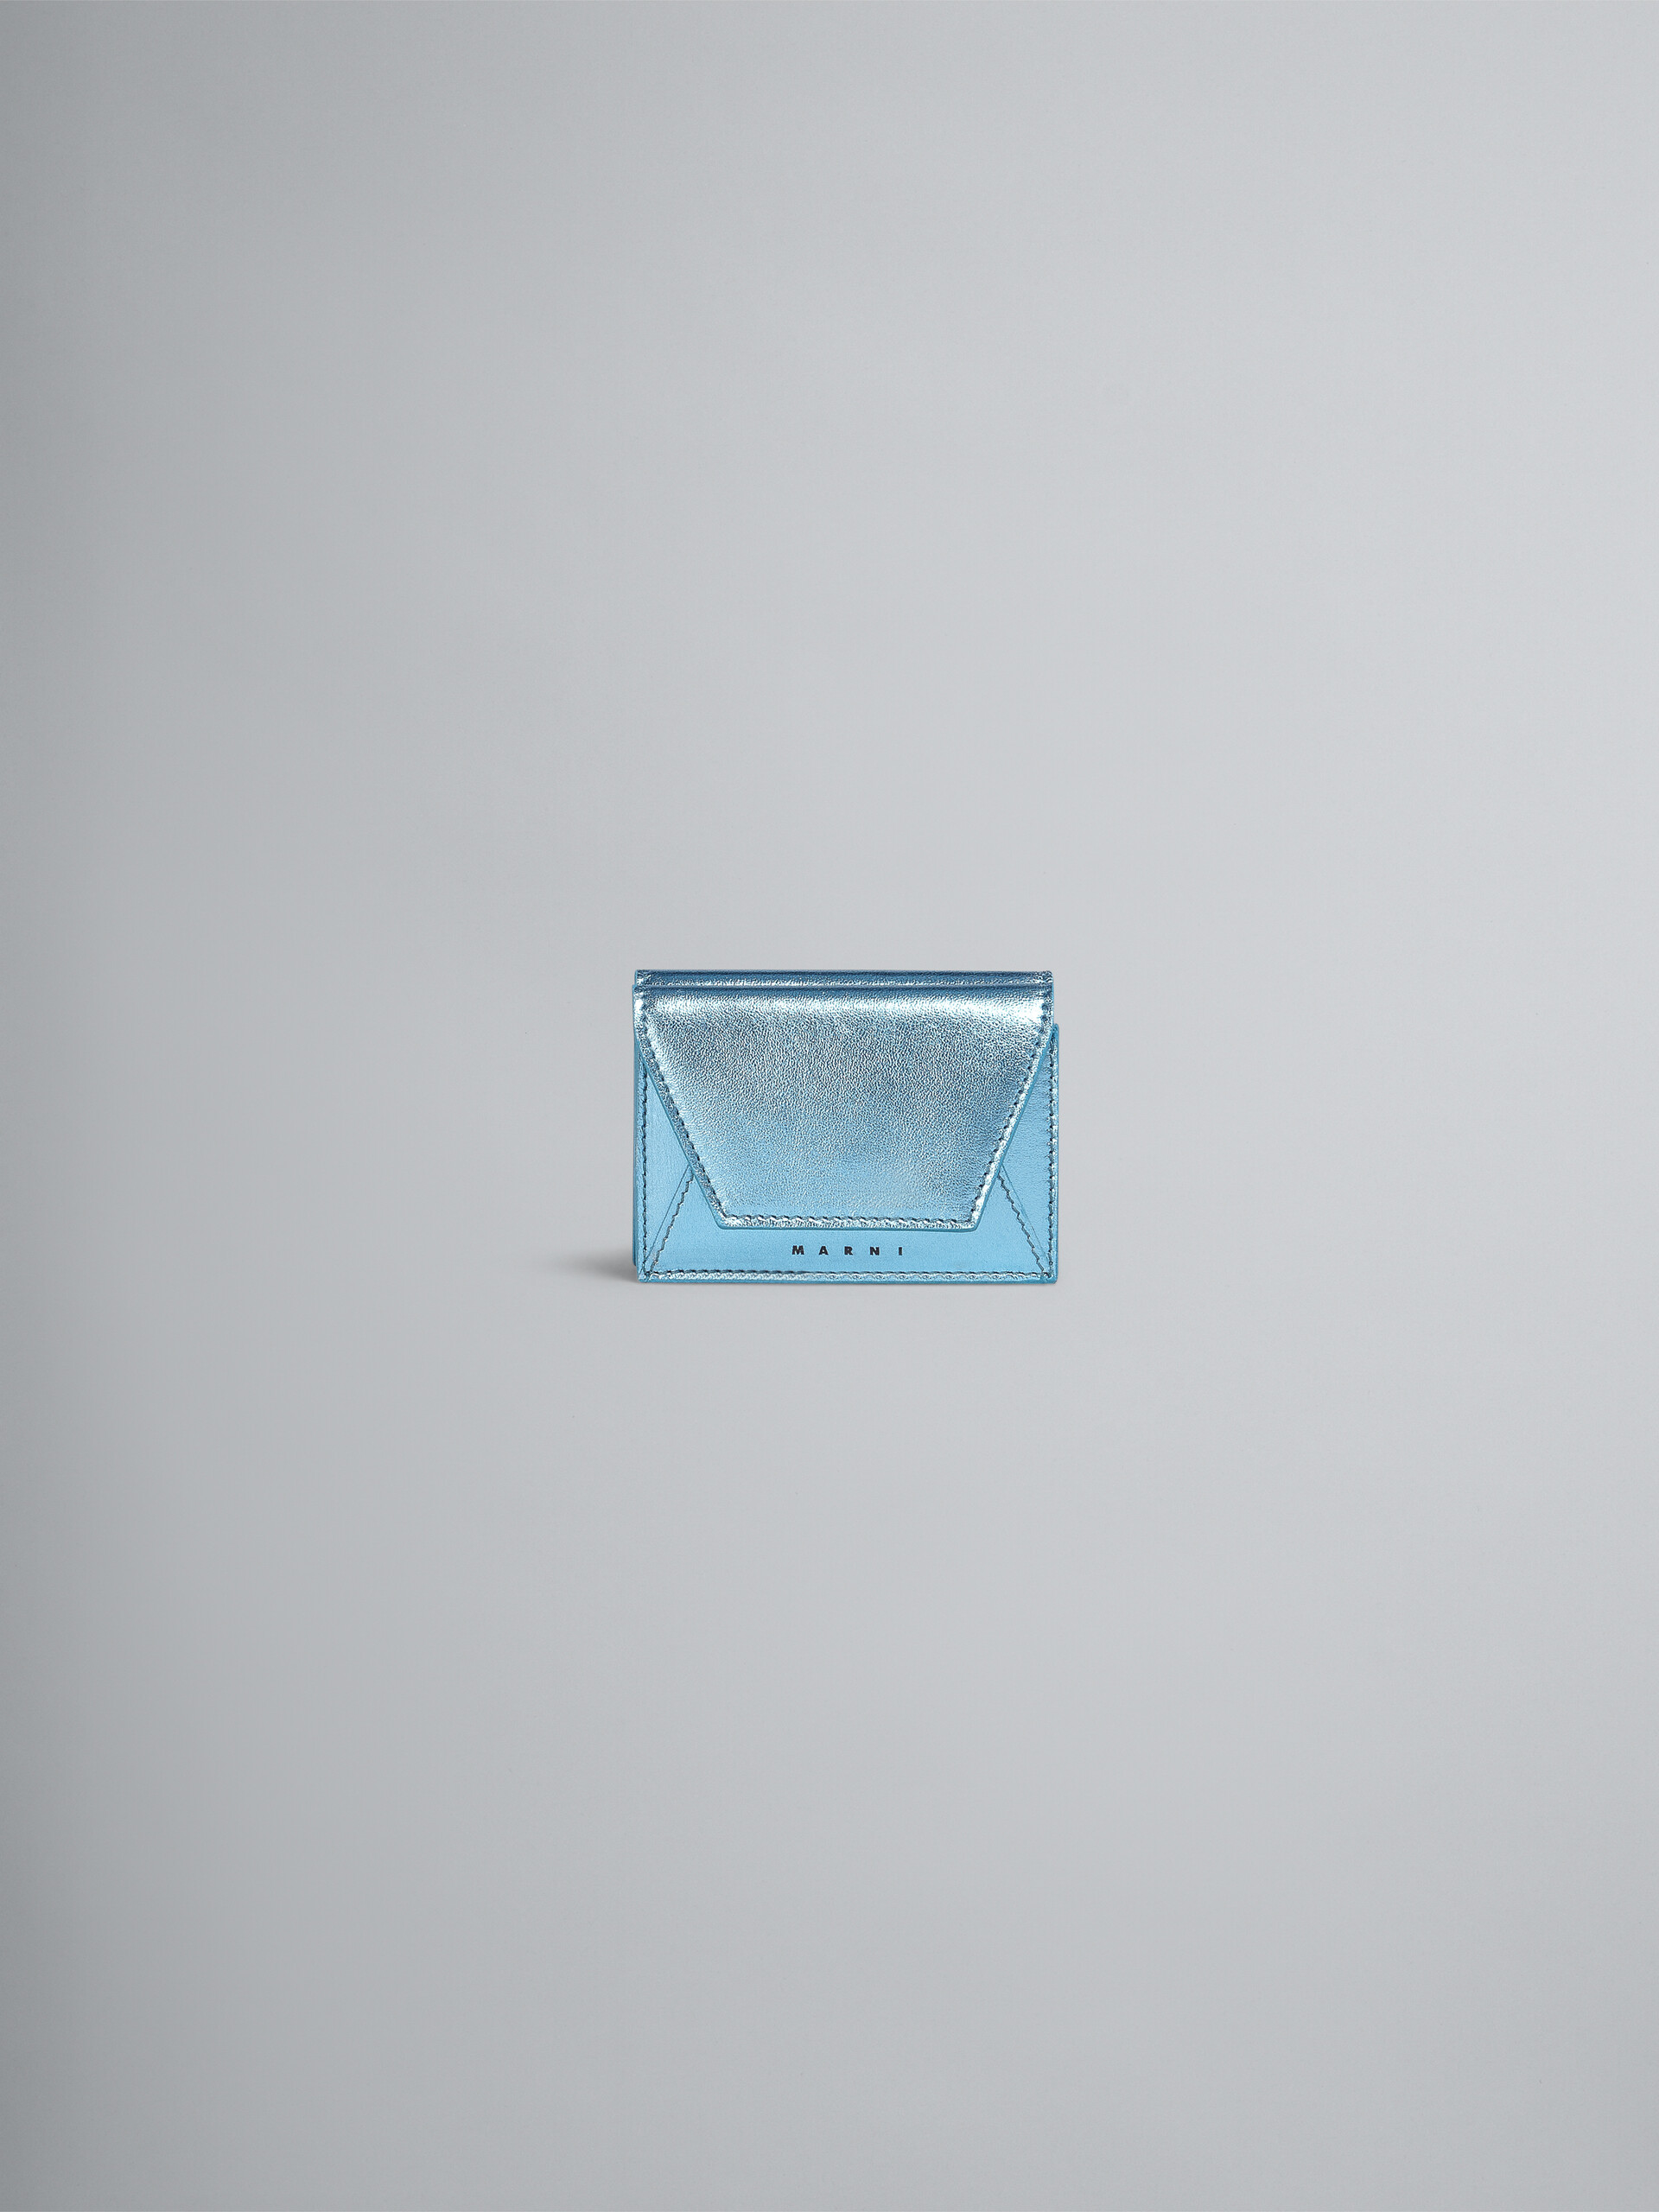 Portefeuille à trois volets en cuir nappa bleu métallisé - Portefeuilles - Image 1